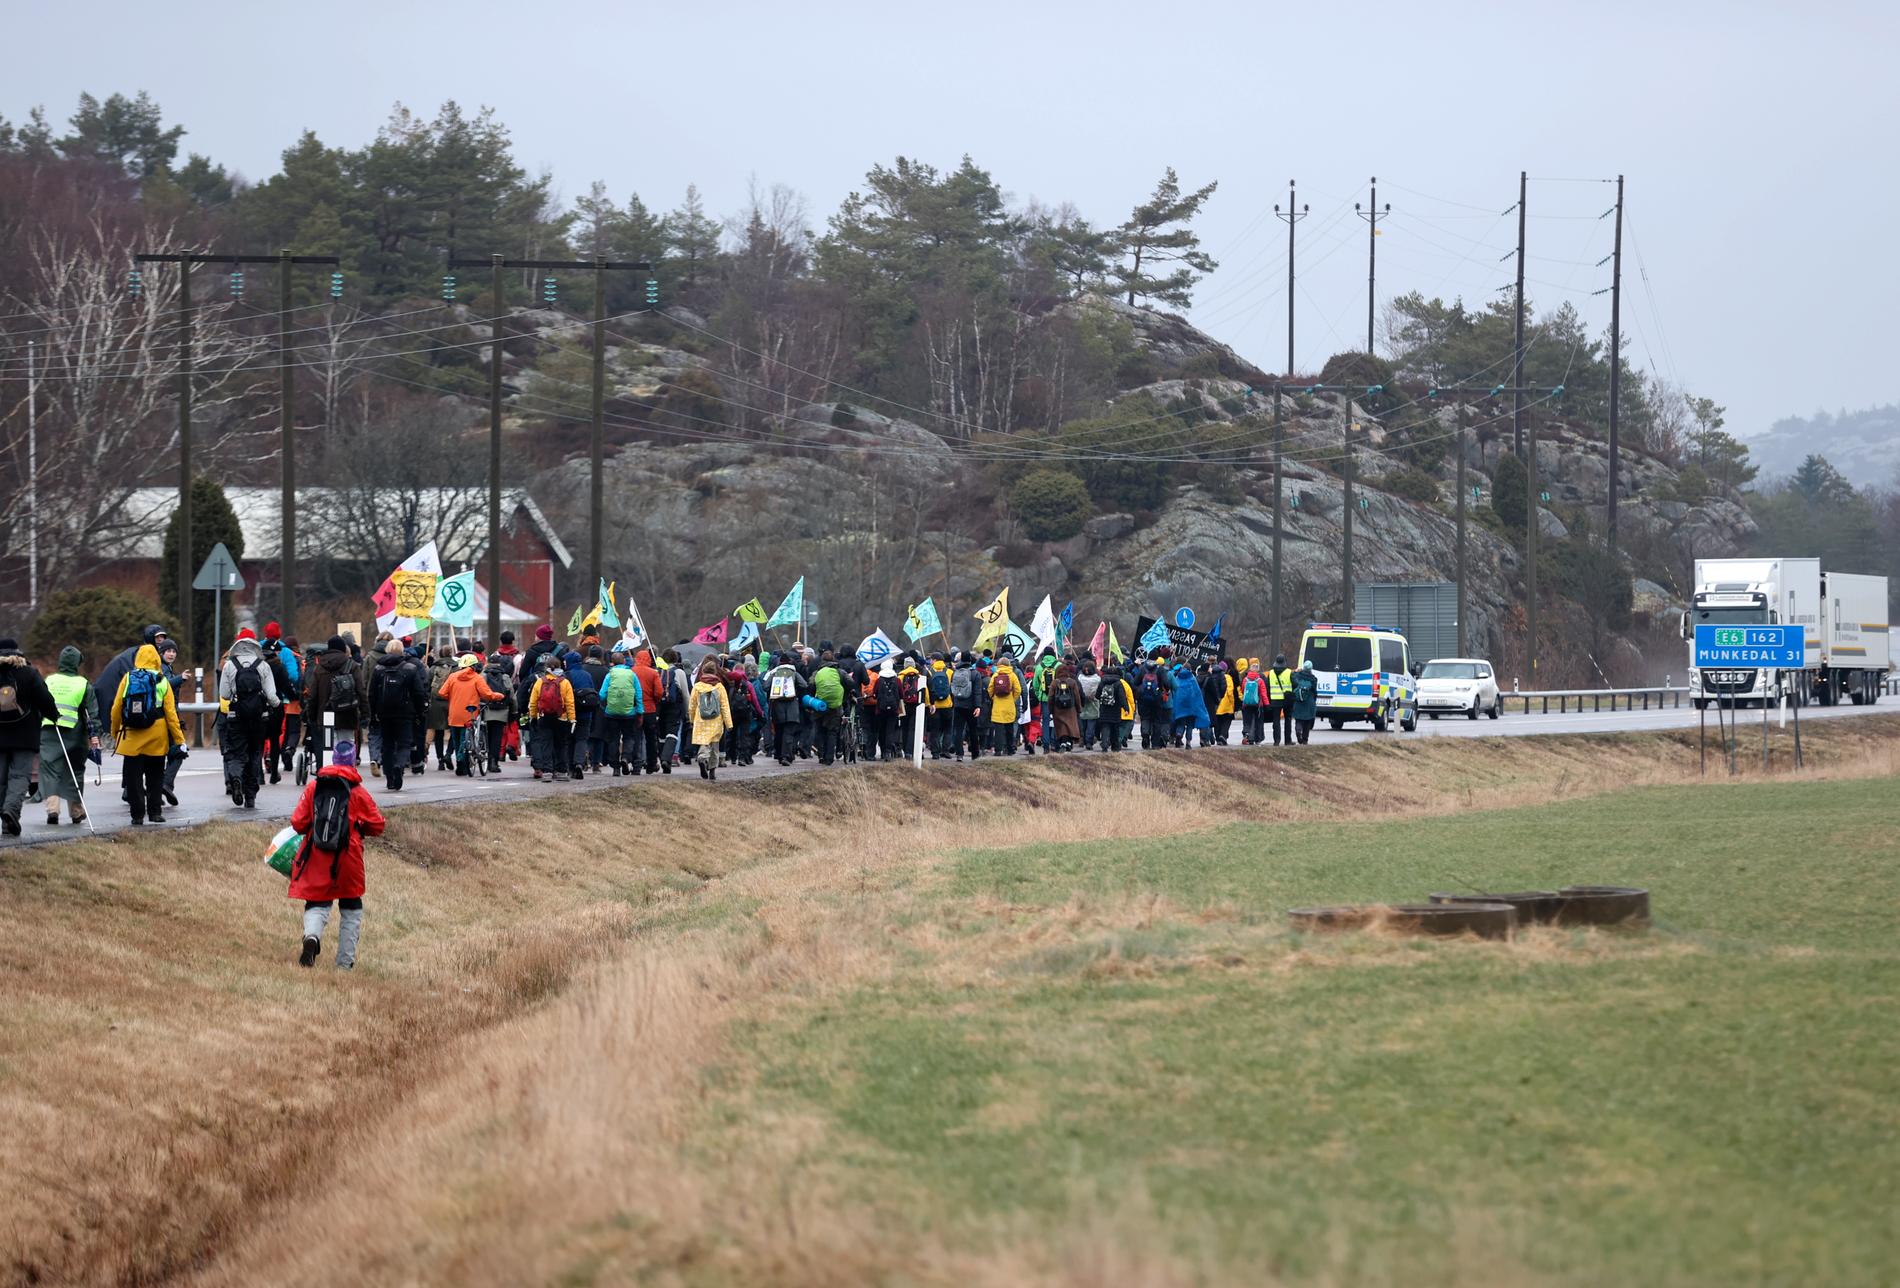 Demonstranter från bland annat Extinction Rebellion demonstrerade i samband med rättegången i Mark- och miljööverdomstolen gällande Preems planer på utbyggnad i Lysekil i mars. Arkivbild.